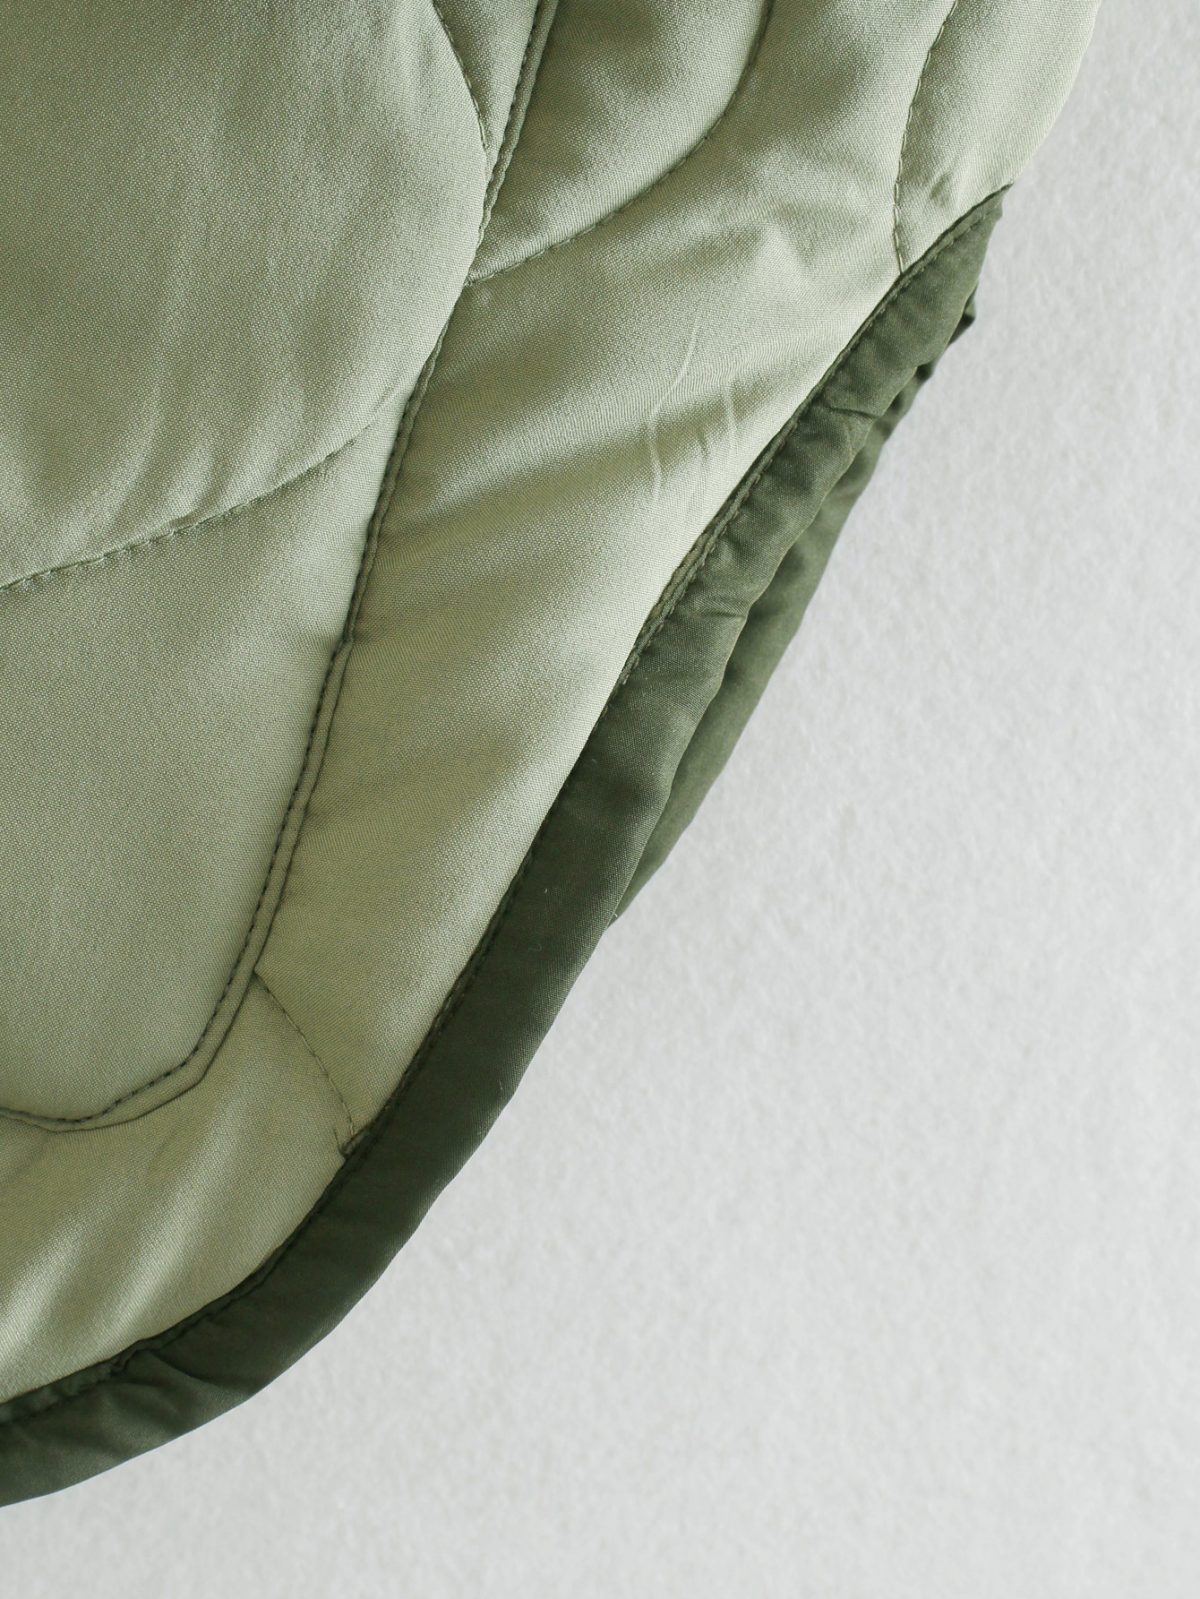 Autumn Moss Green Pocket Decoration Wide Cotton Coat - Coats & Jackets - Uniqistic.com